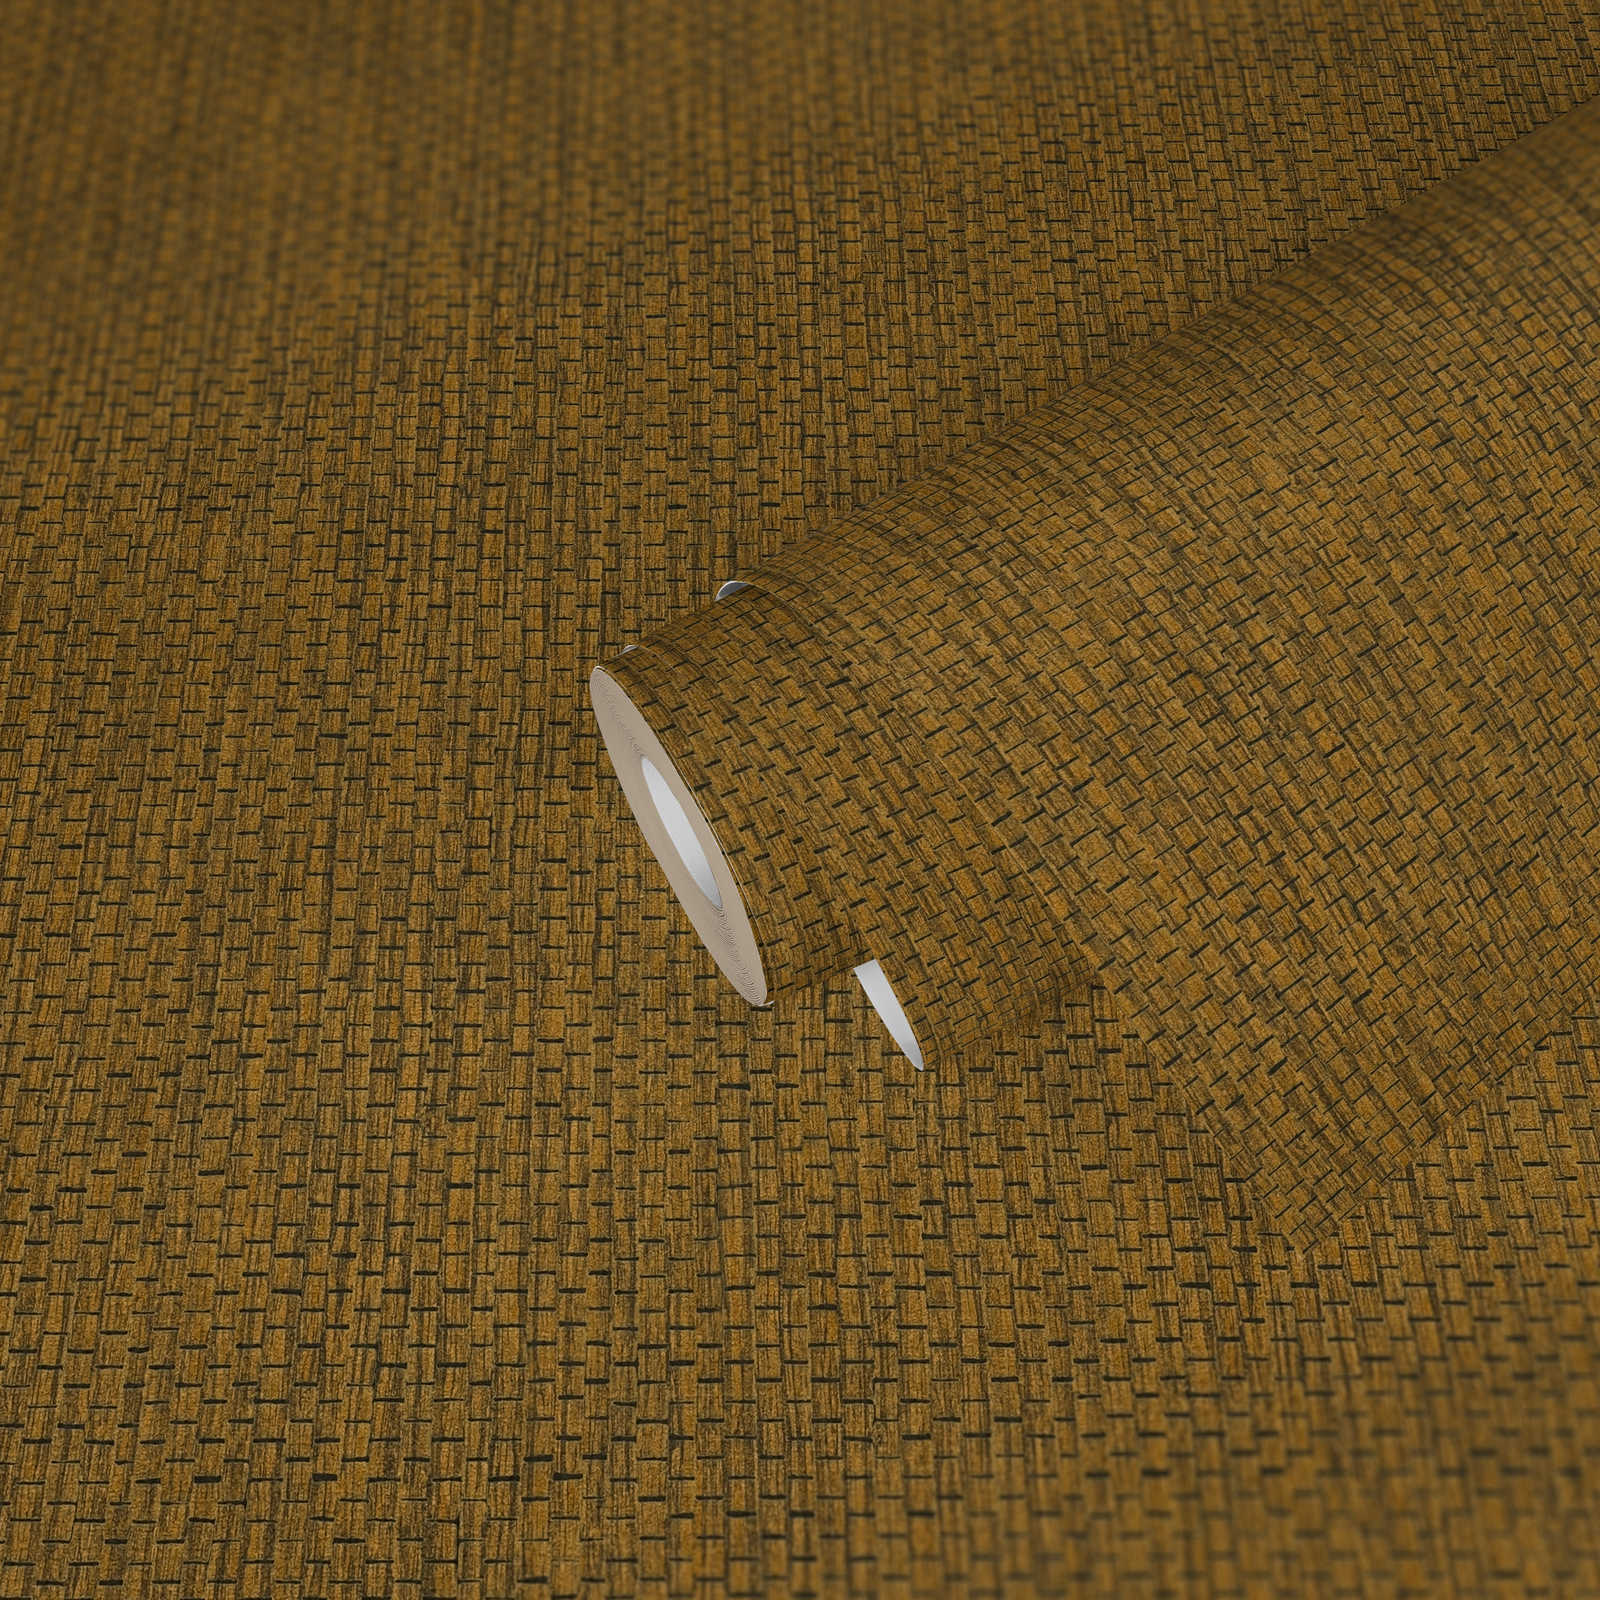             Papel pintado con diseño de alfombra de rafia - Marrón, Amarillo
        